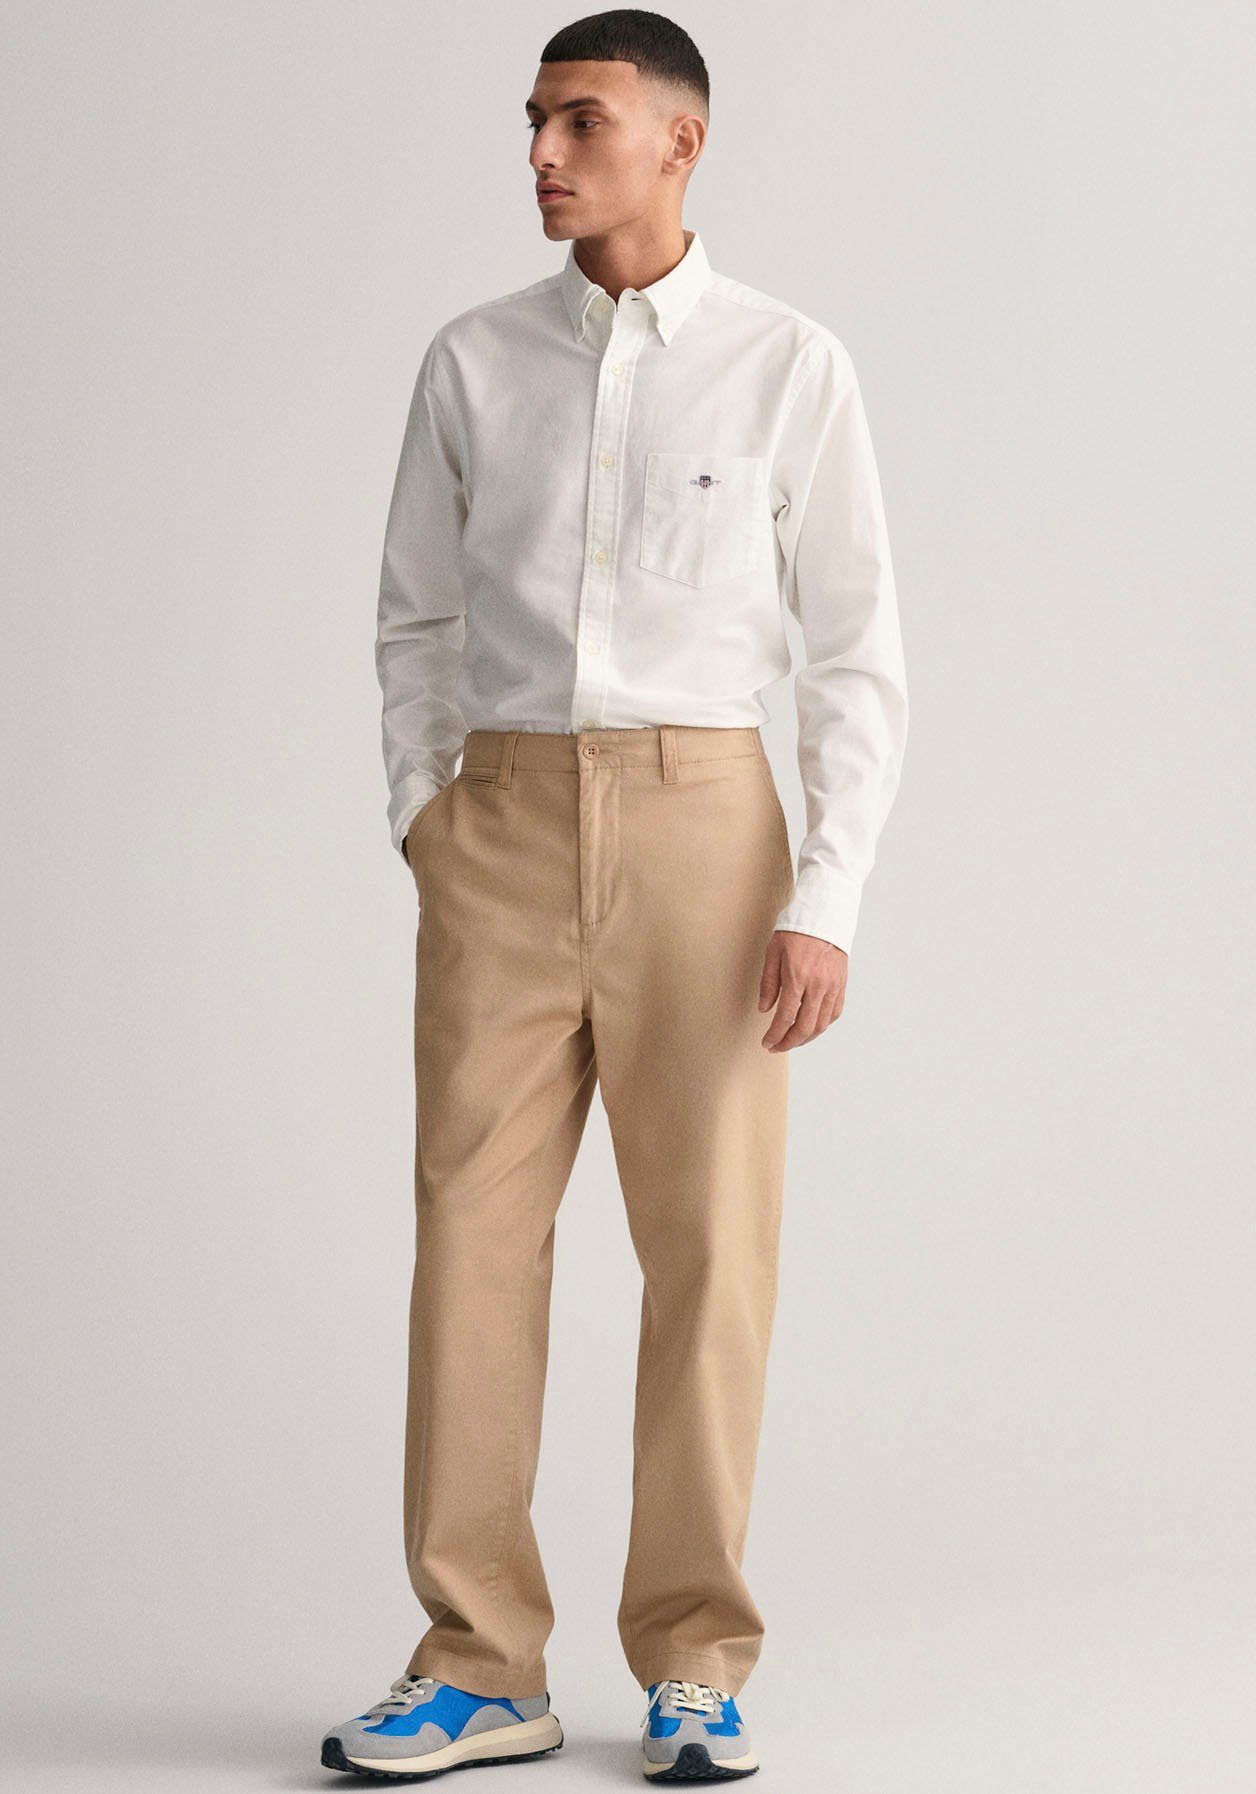 Gant Businesshemd REG OXFORD Hemd white Regular Oxford Fit SHIRT